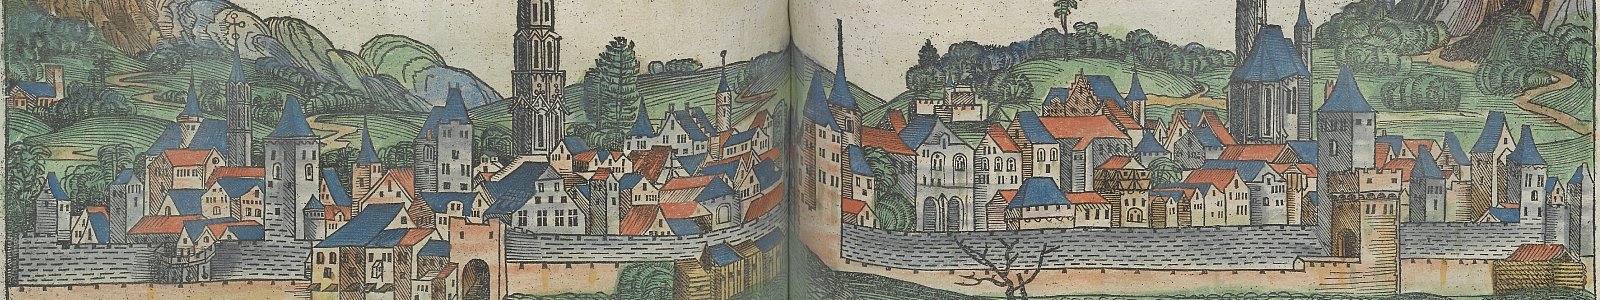 Profiel van Wenen in het 'Liber chronicarum', Hartmann Schedel, 1493